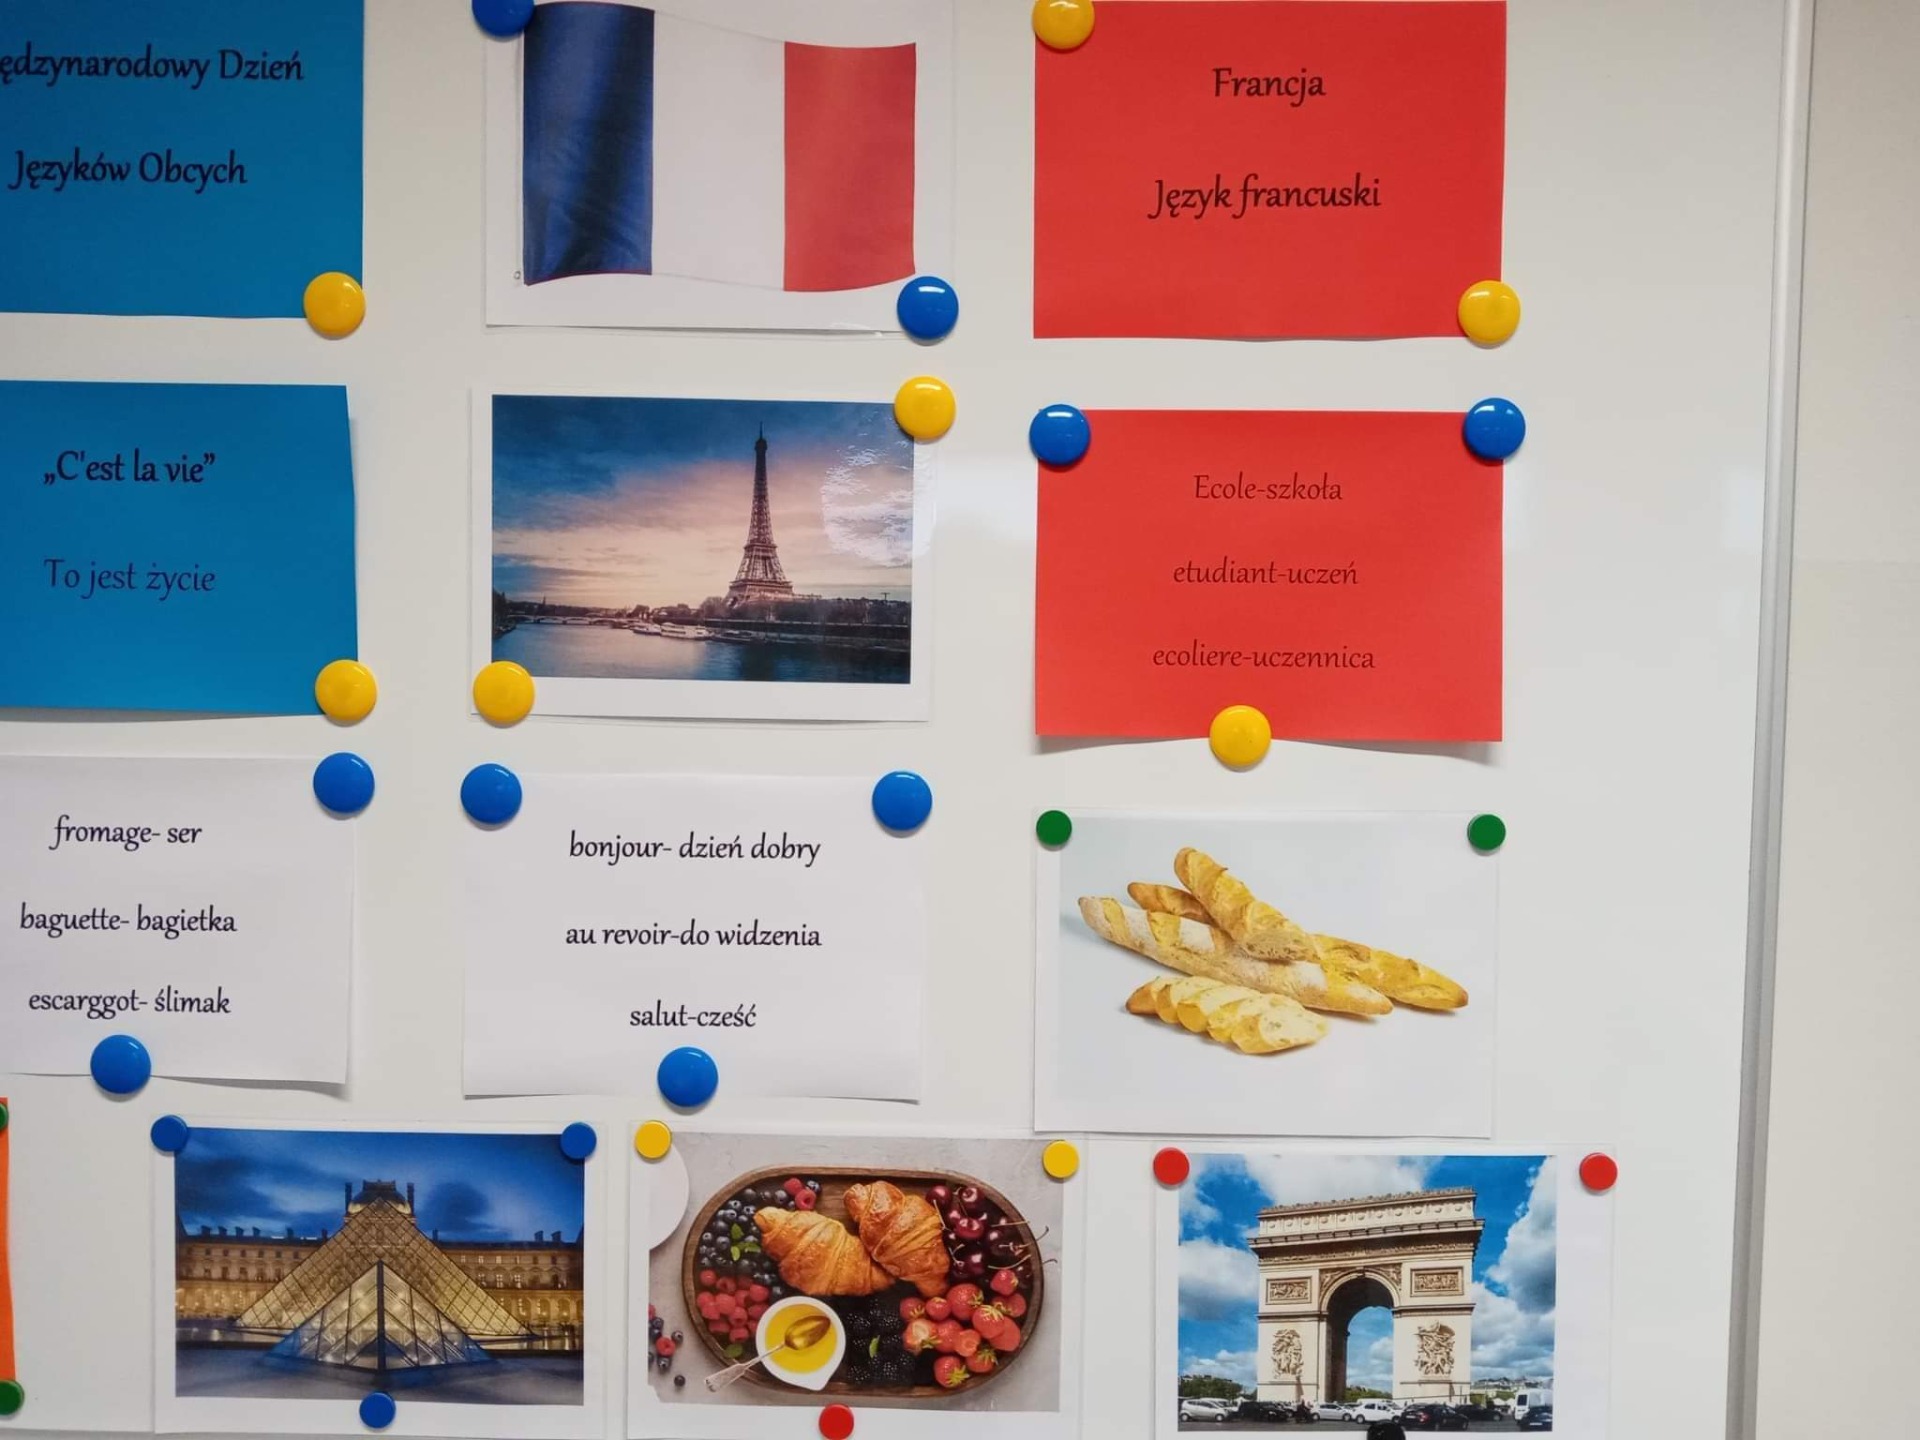 Międzynarodowy Dzień Języków Obcych w klasie 6. ✈️🥐  Francja i język francuski. - Obrazek 6